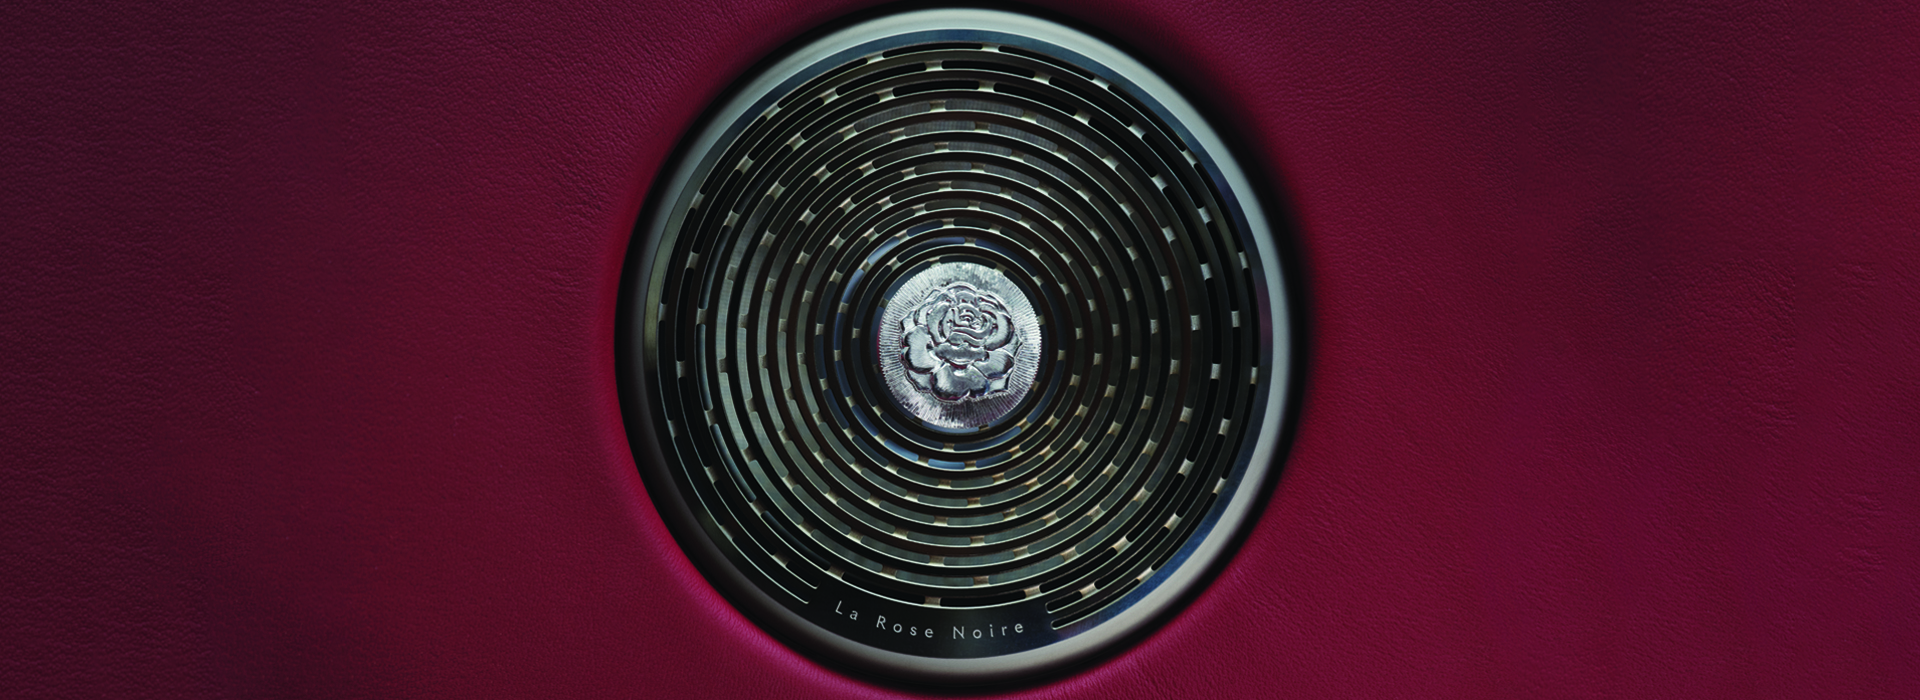 Rolls Royce La Rose Noire – jedinstvena destilacija ljubavi, umeća i luksuza